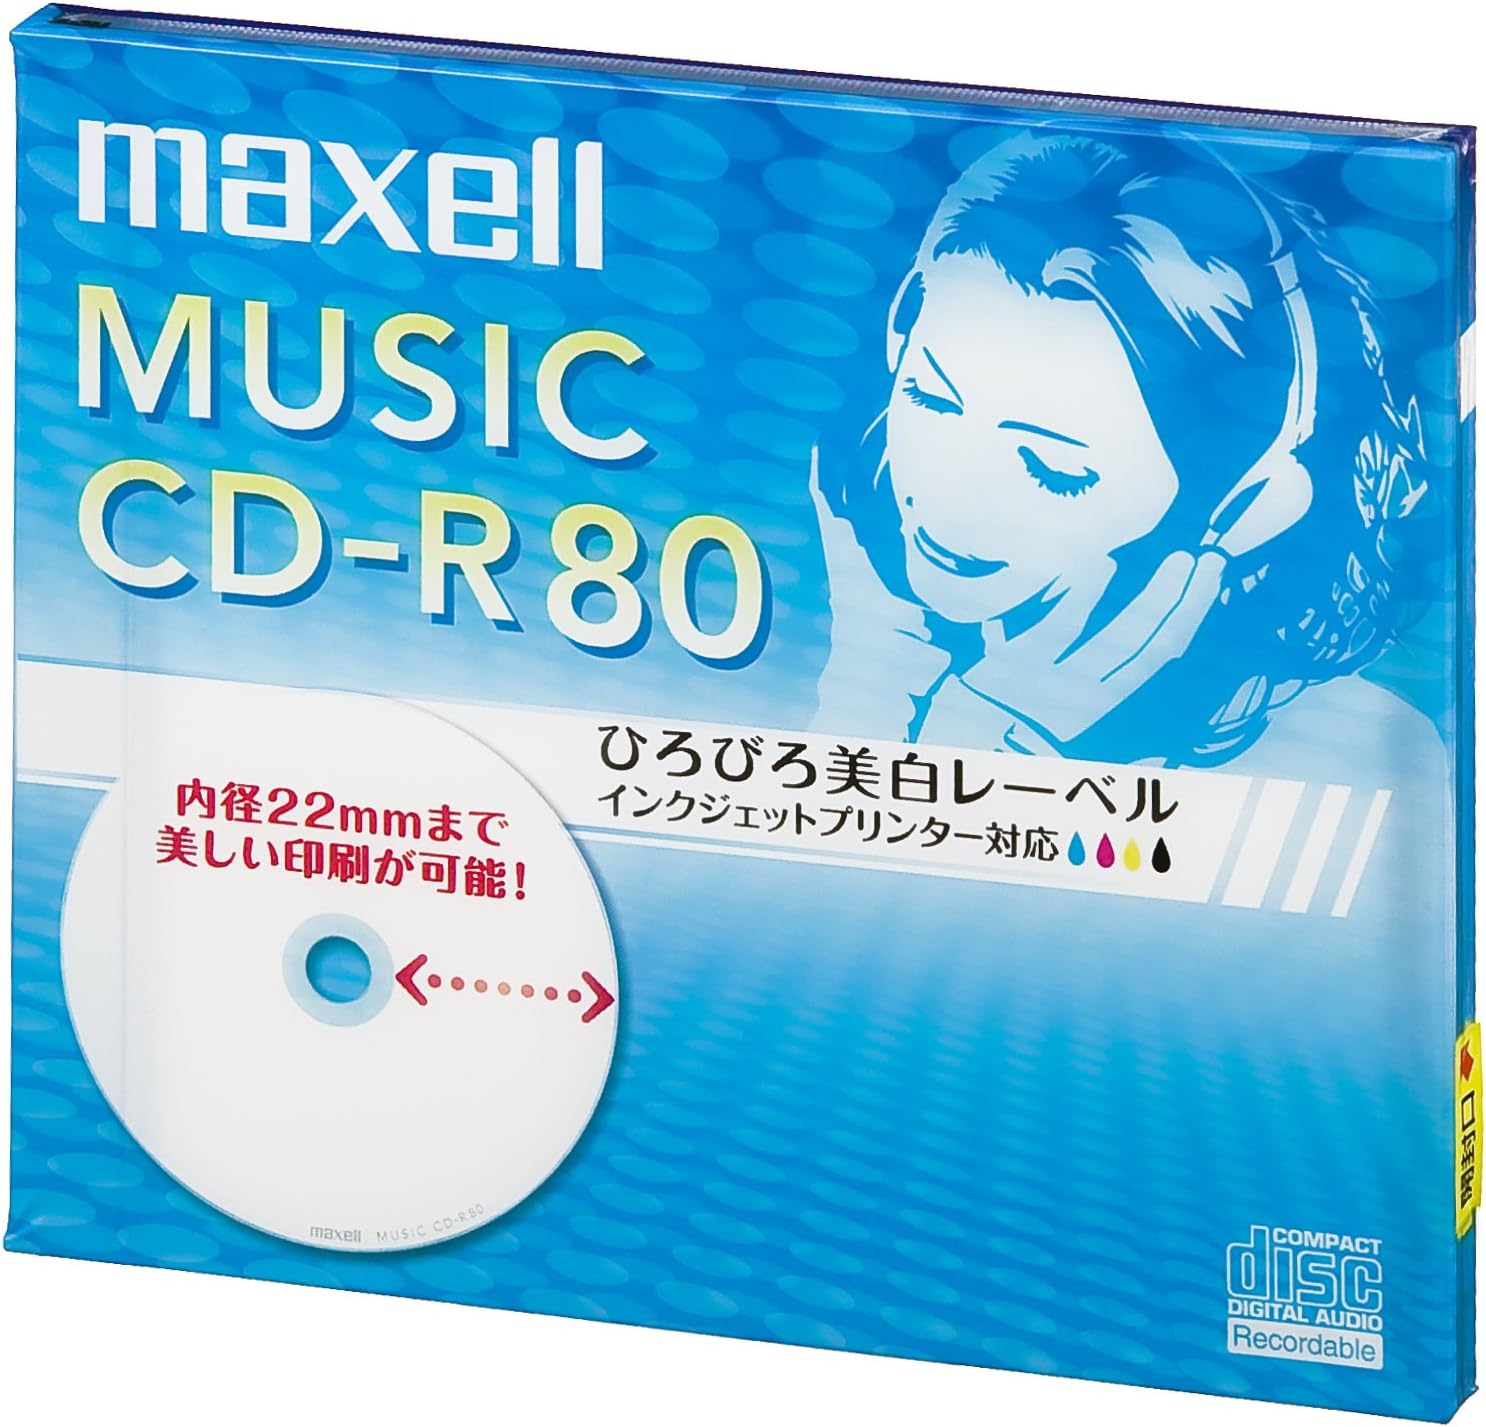 マクセル 音楽用 CD-R 80分 インクジェットプリンタ対応ホワイト(ワイド印刷) 1枚 CDRA80WP.1J